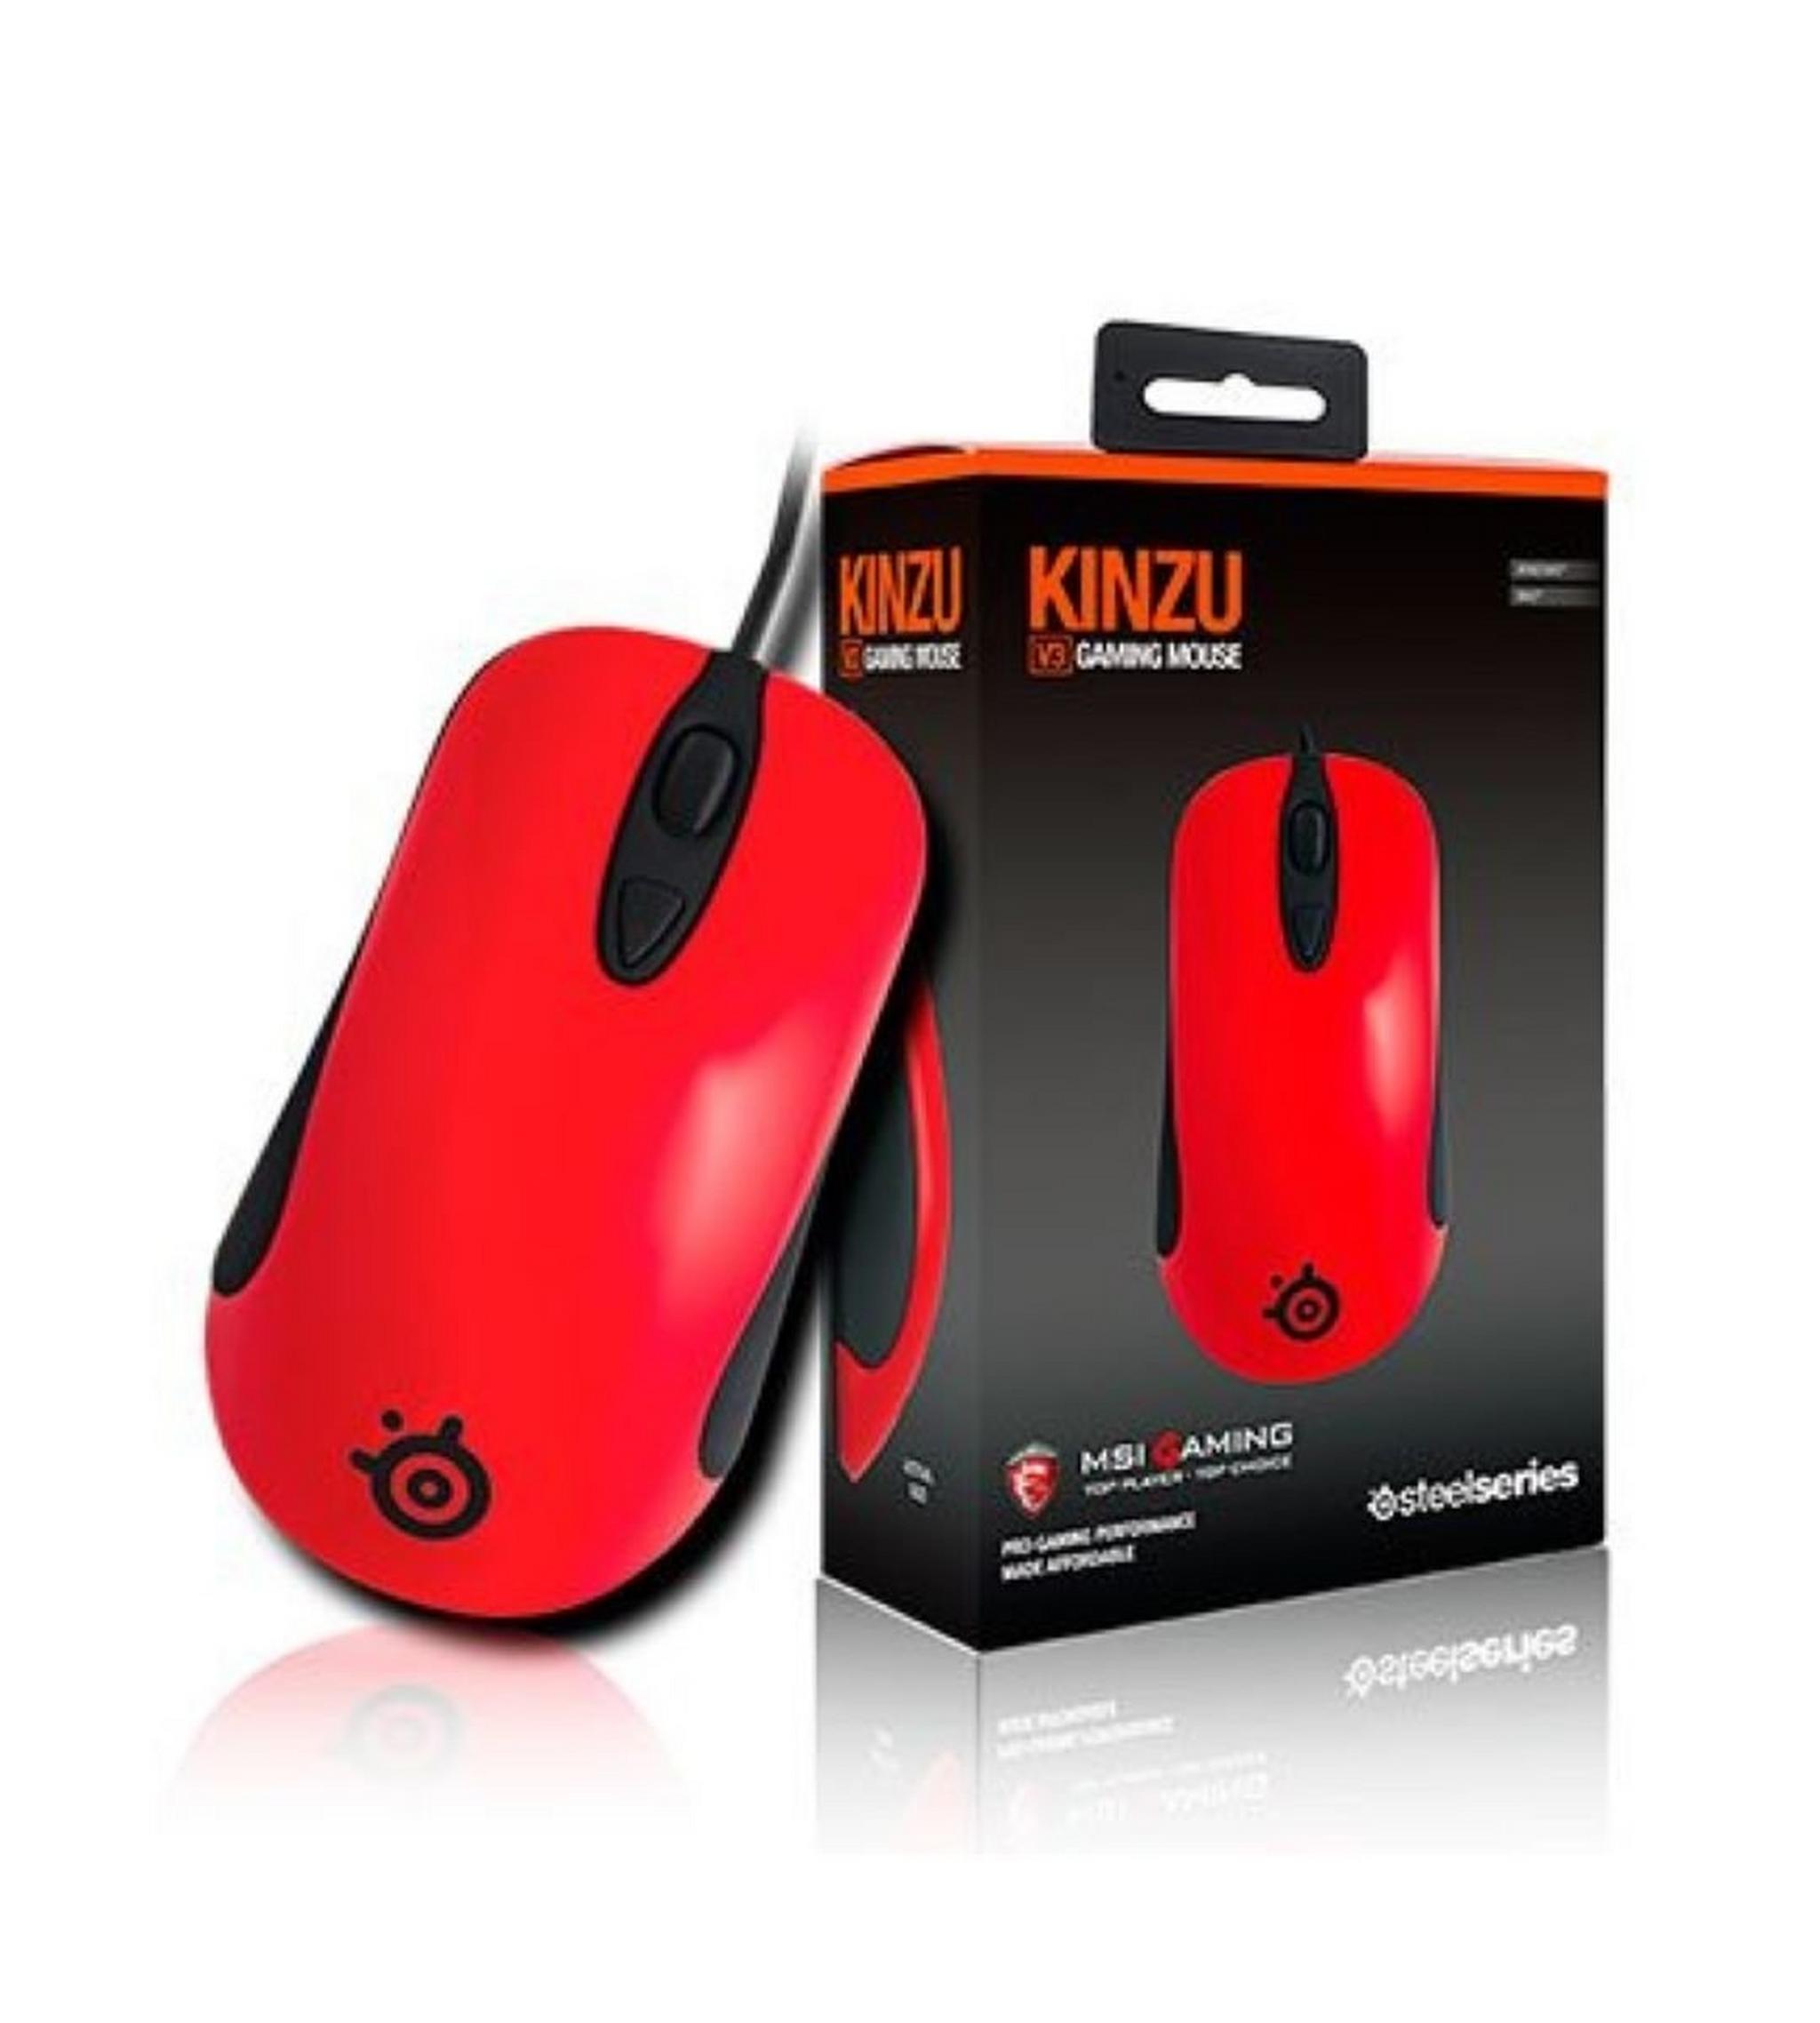 MSI SteelSeries Kinzu Gaming Mouse - Red